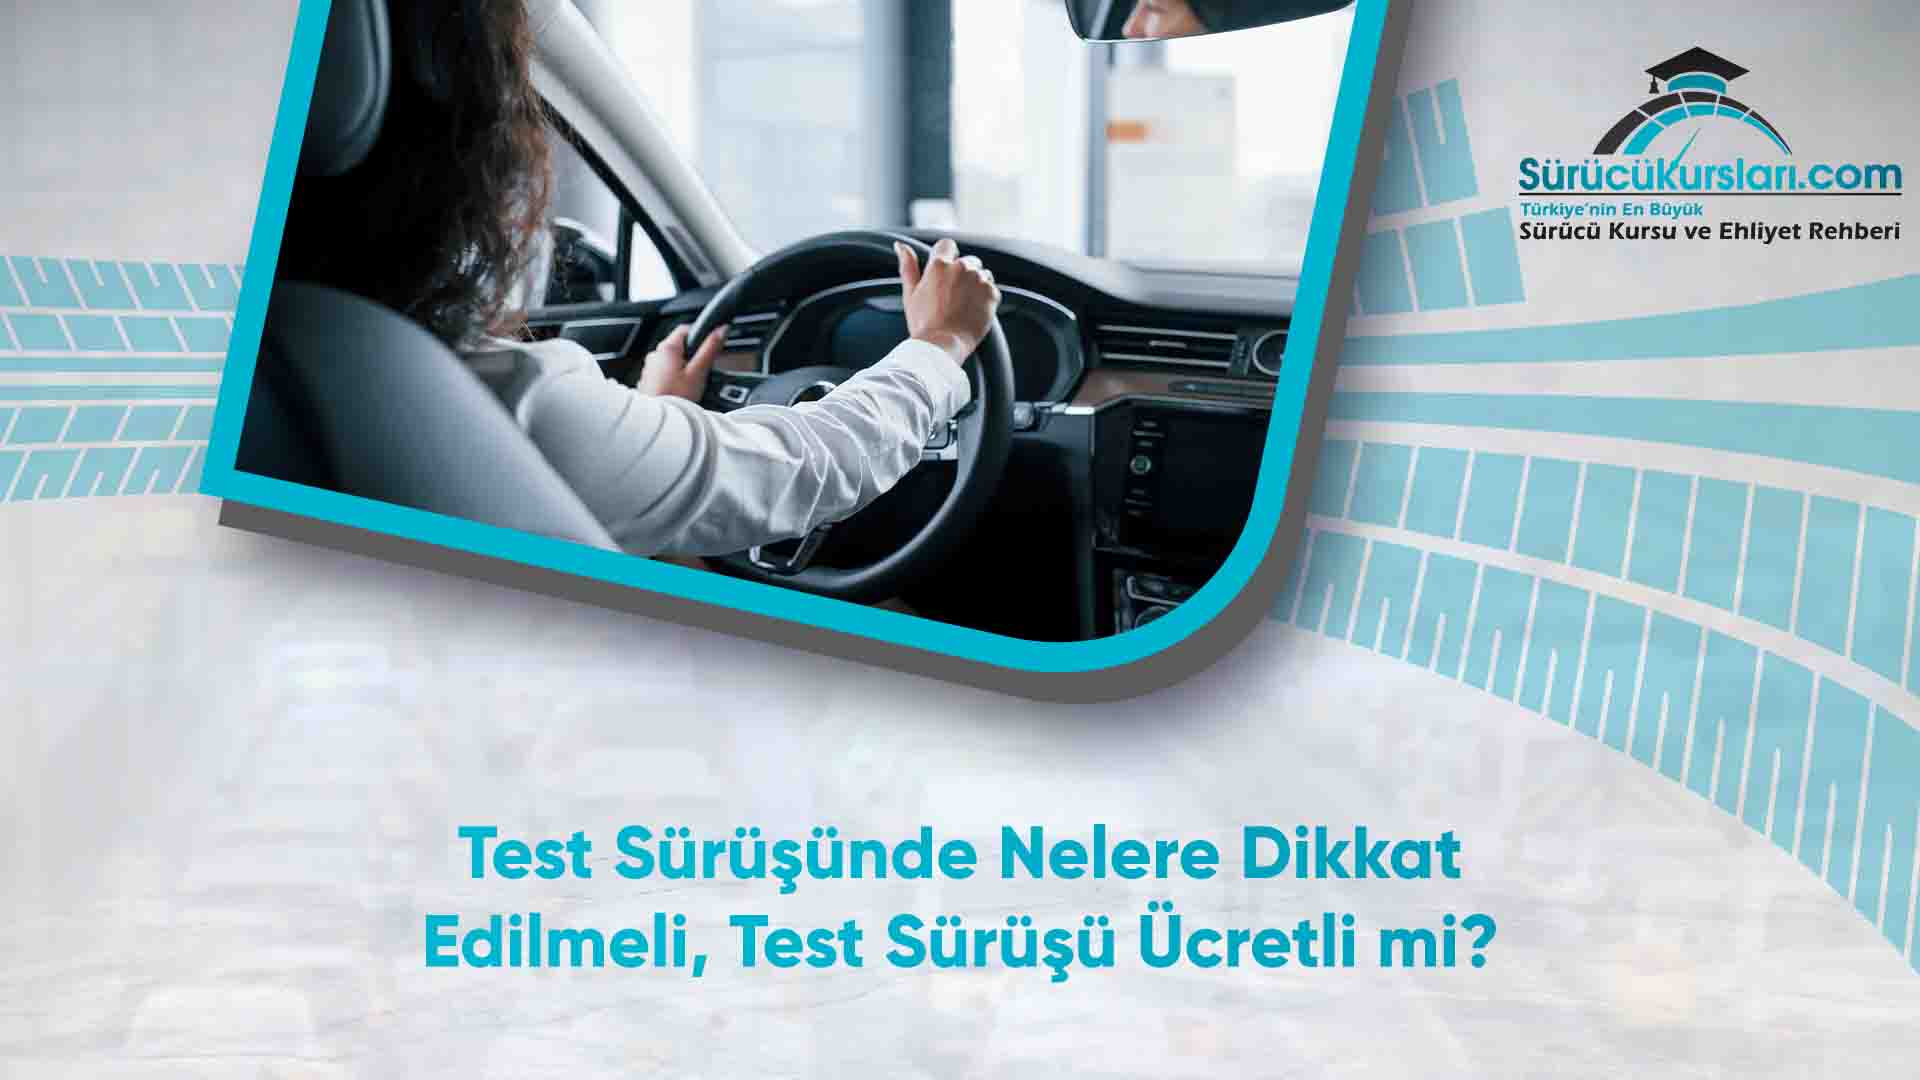 Test Sürüşünde Nelere Dikkat Edilmeli - Test Sürüşü Ücretli mi